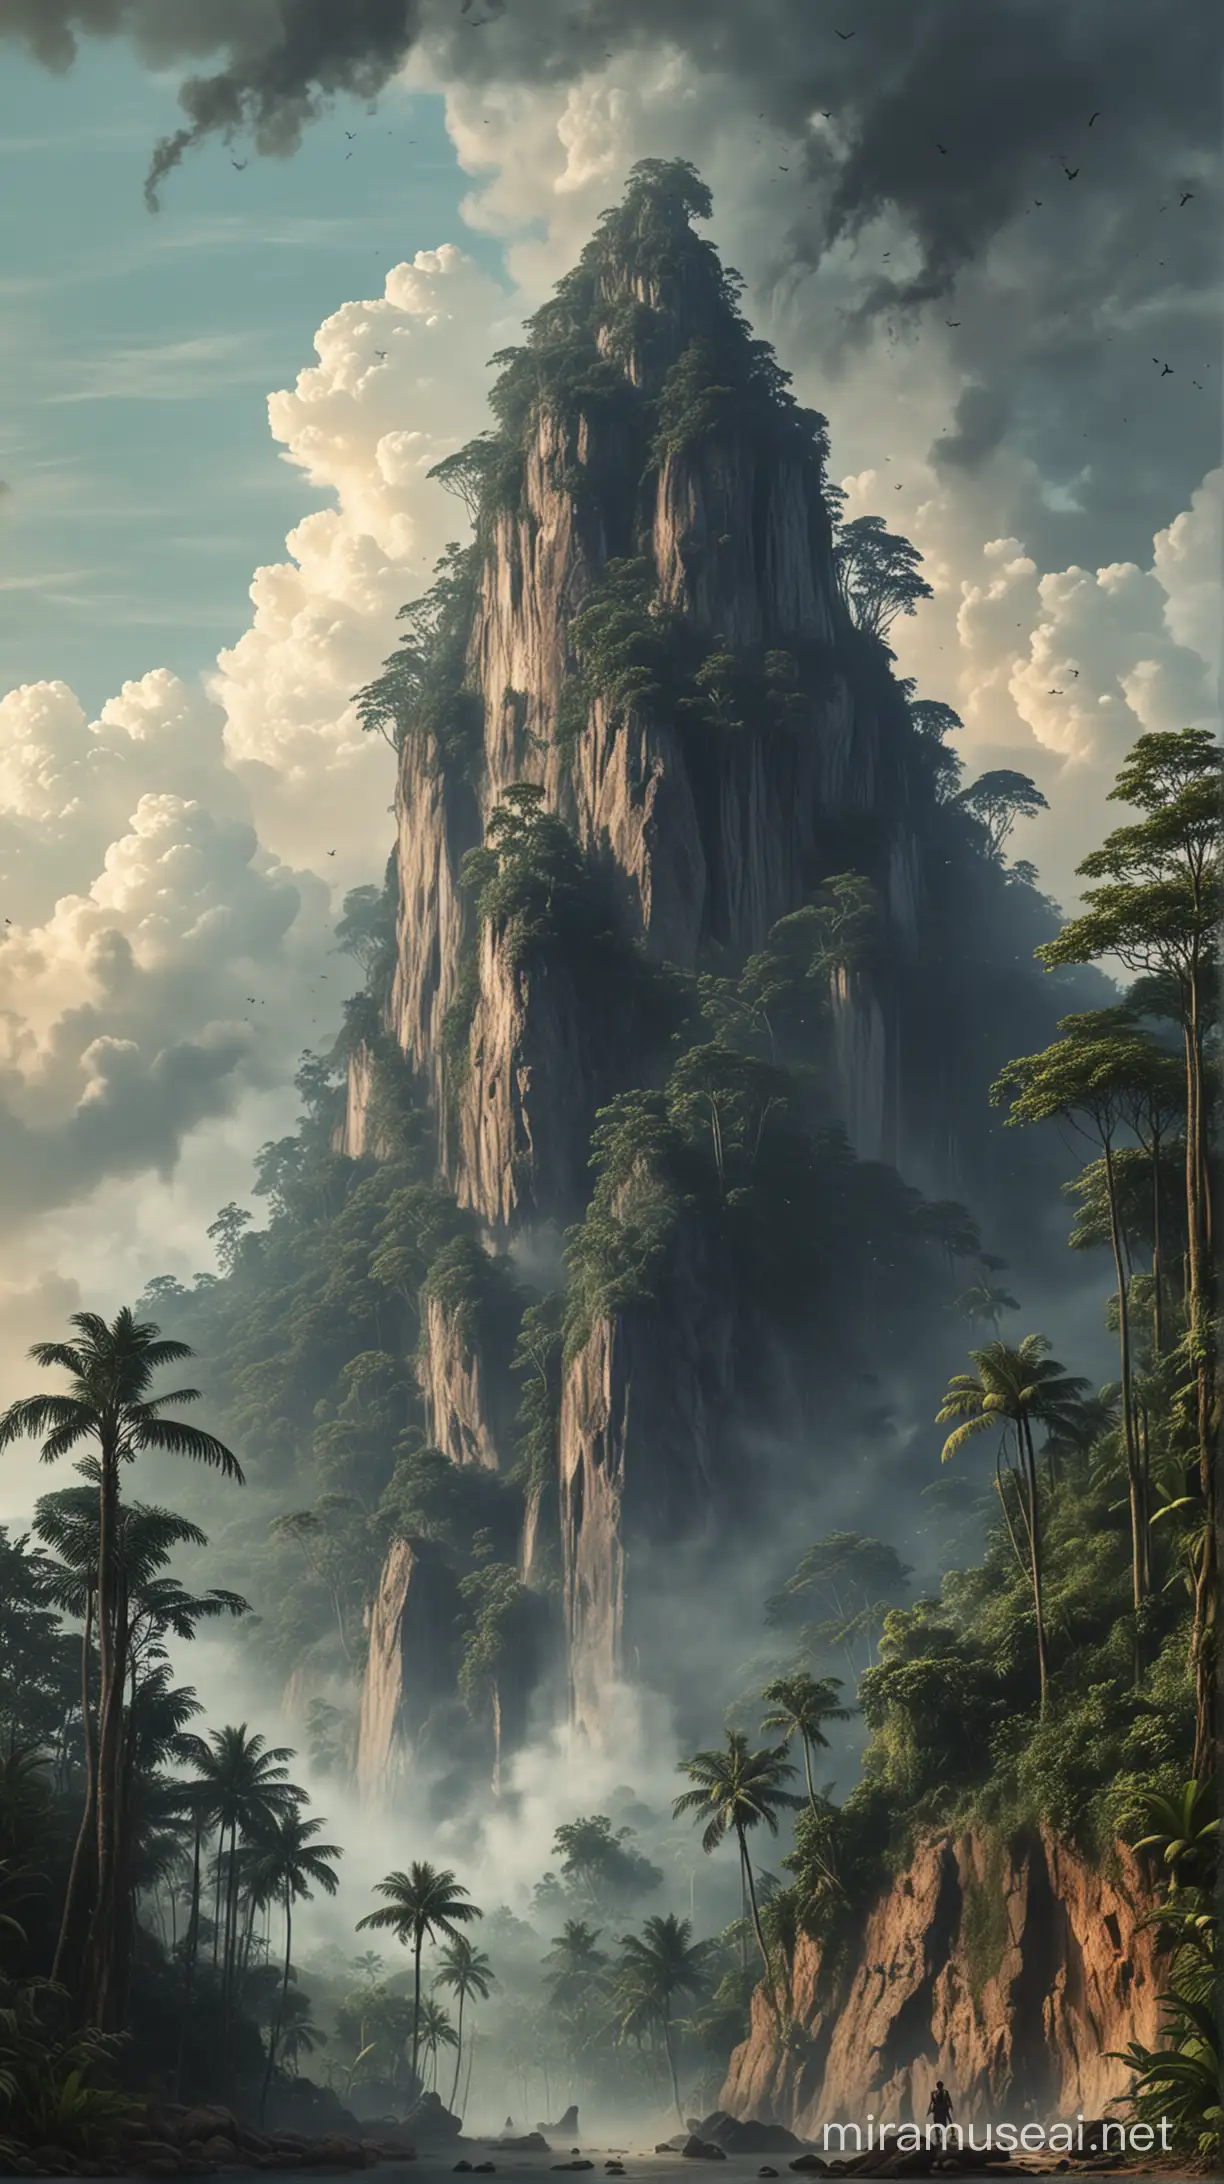 Ilustrasi Gunung Salak yang menjulang tinggi dengan nuansa mistis yang menakutkan.